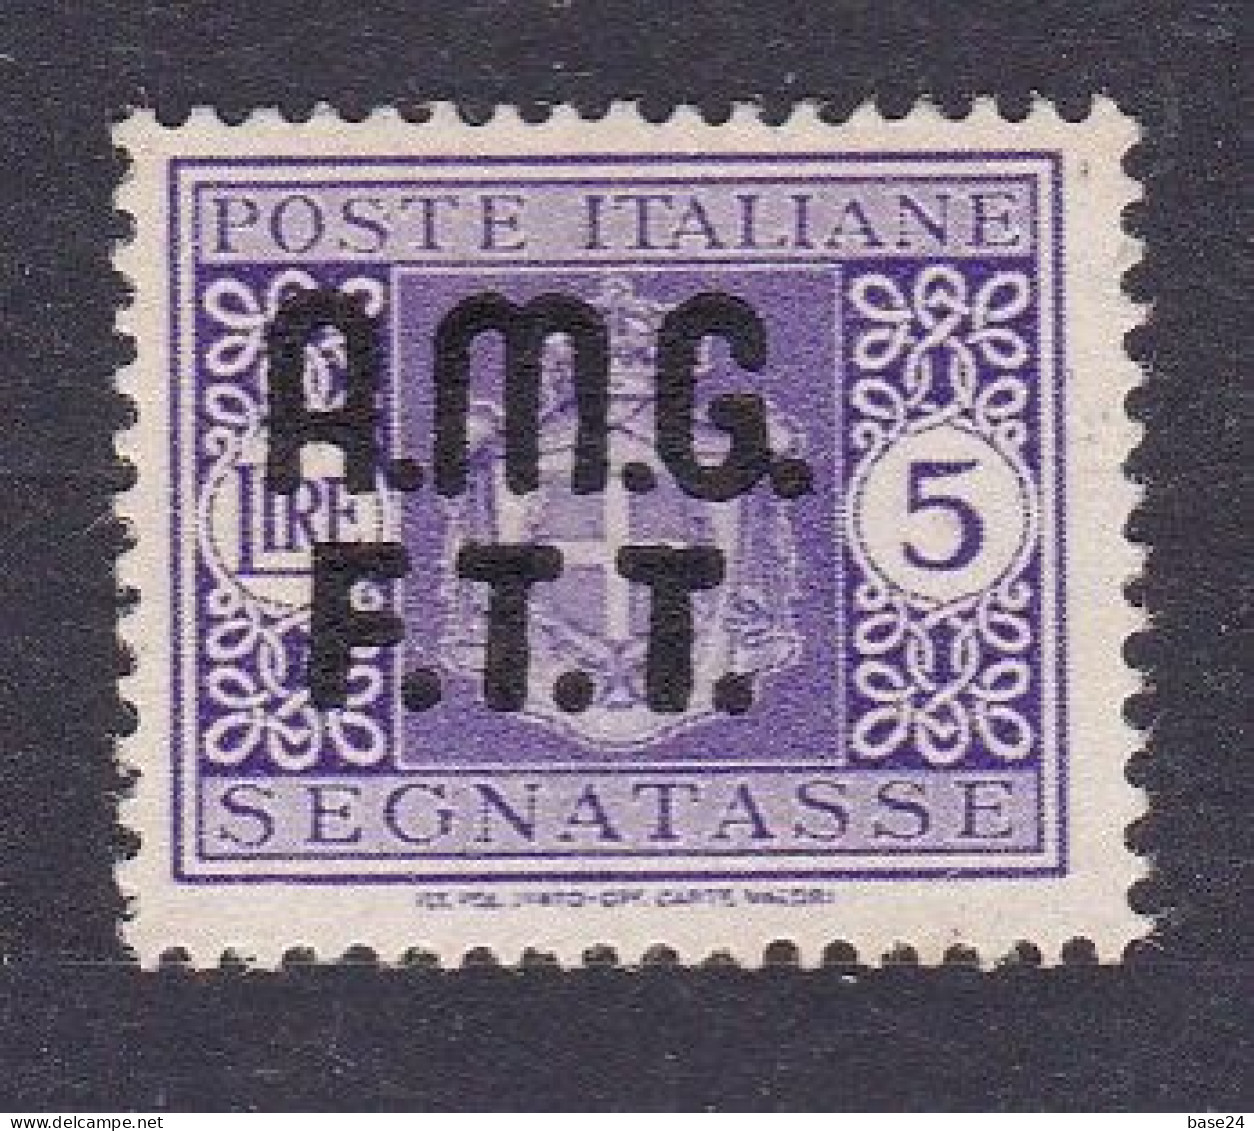 1947 Italia Italy Trieste A SEGNATASSE 4A  POSTAGE DUE 5 Lire Violetto Senza Filigrana MLH* Certif Biondi, Firma A.Diena - Taxe